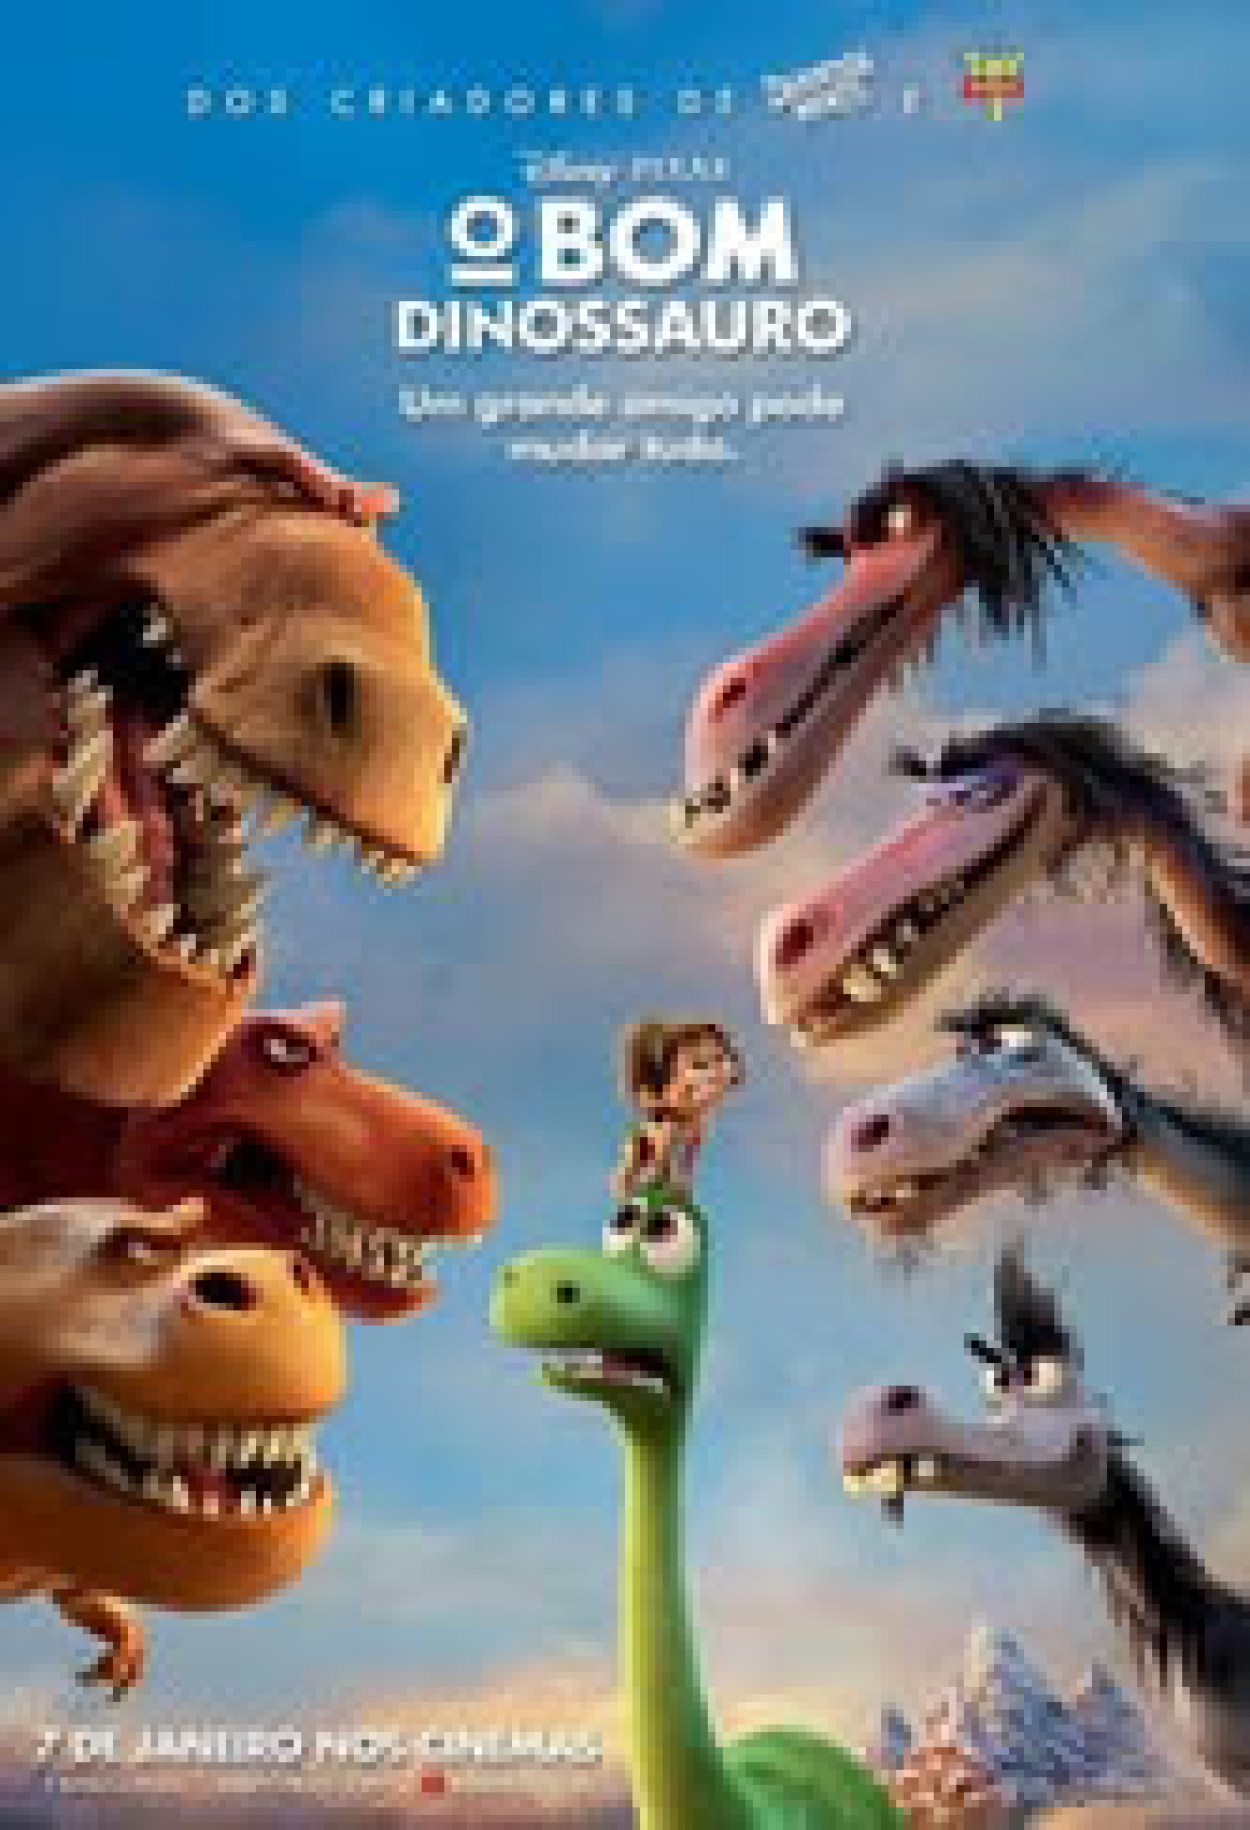 Fotos Filme Desenho Animado Sobre Dinossauros, 61.000+ fotos de